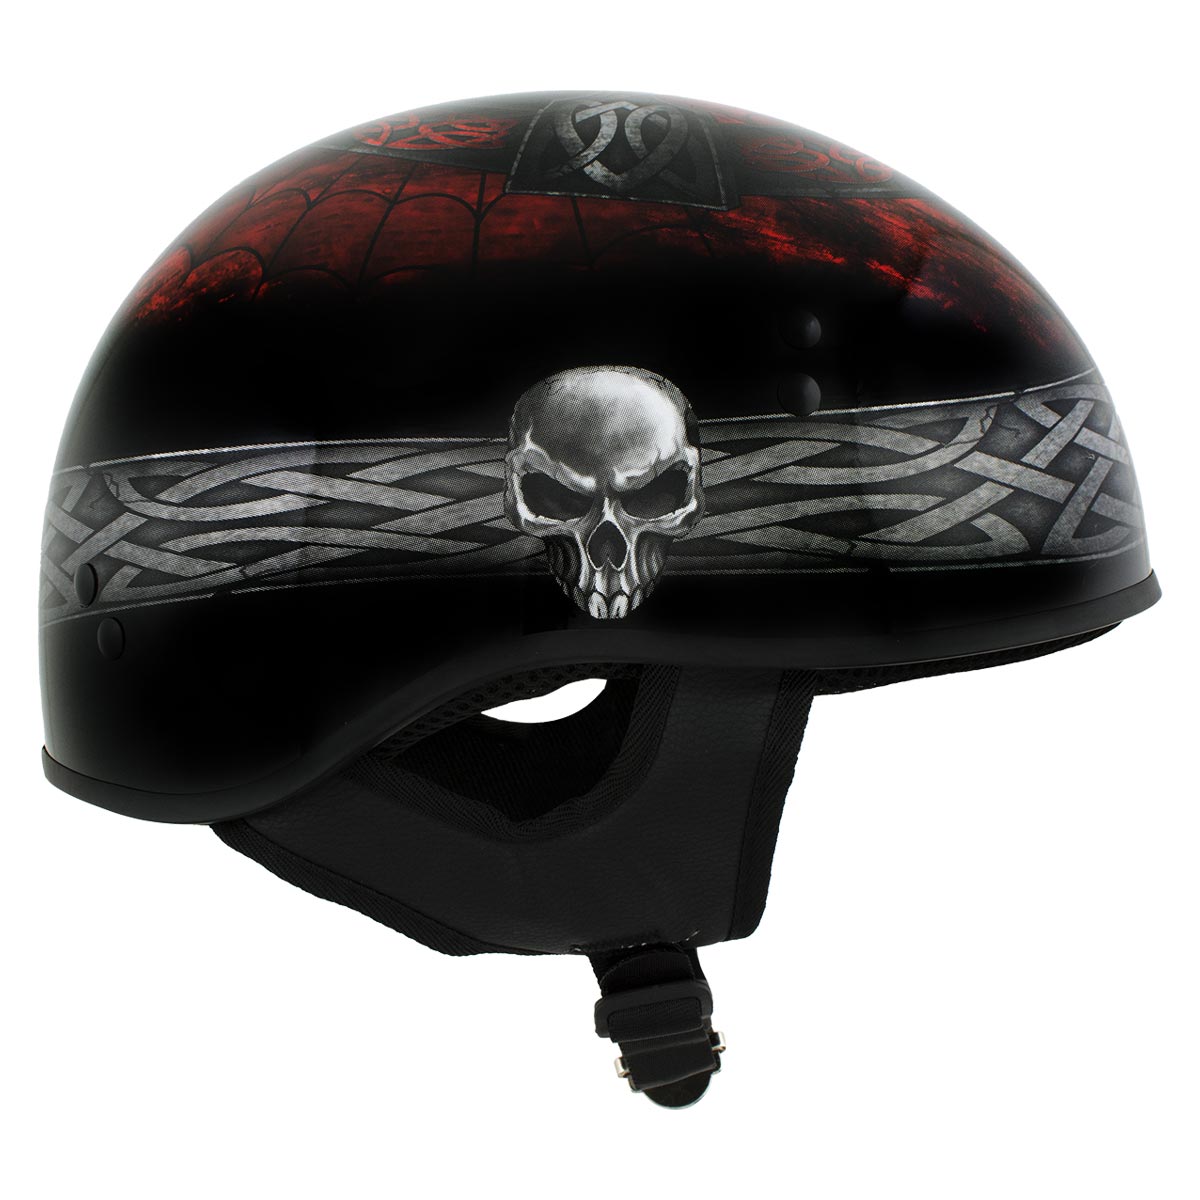 Hot Leathers HLD1008 Black 'Celtic Cross' Motorcycle DOT Approved Skull Cap Half Helmet for Men and Women Biker